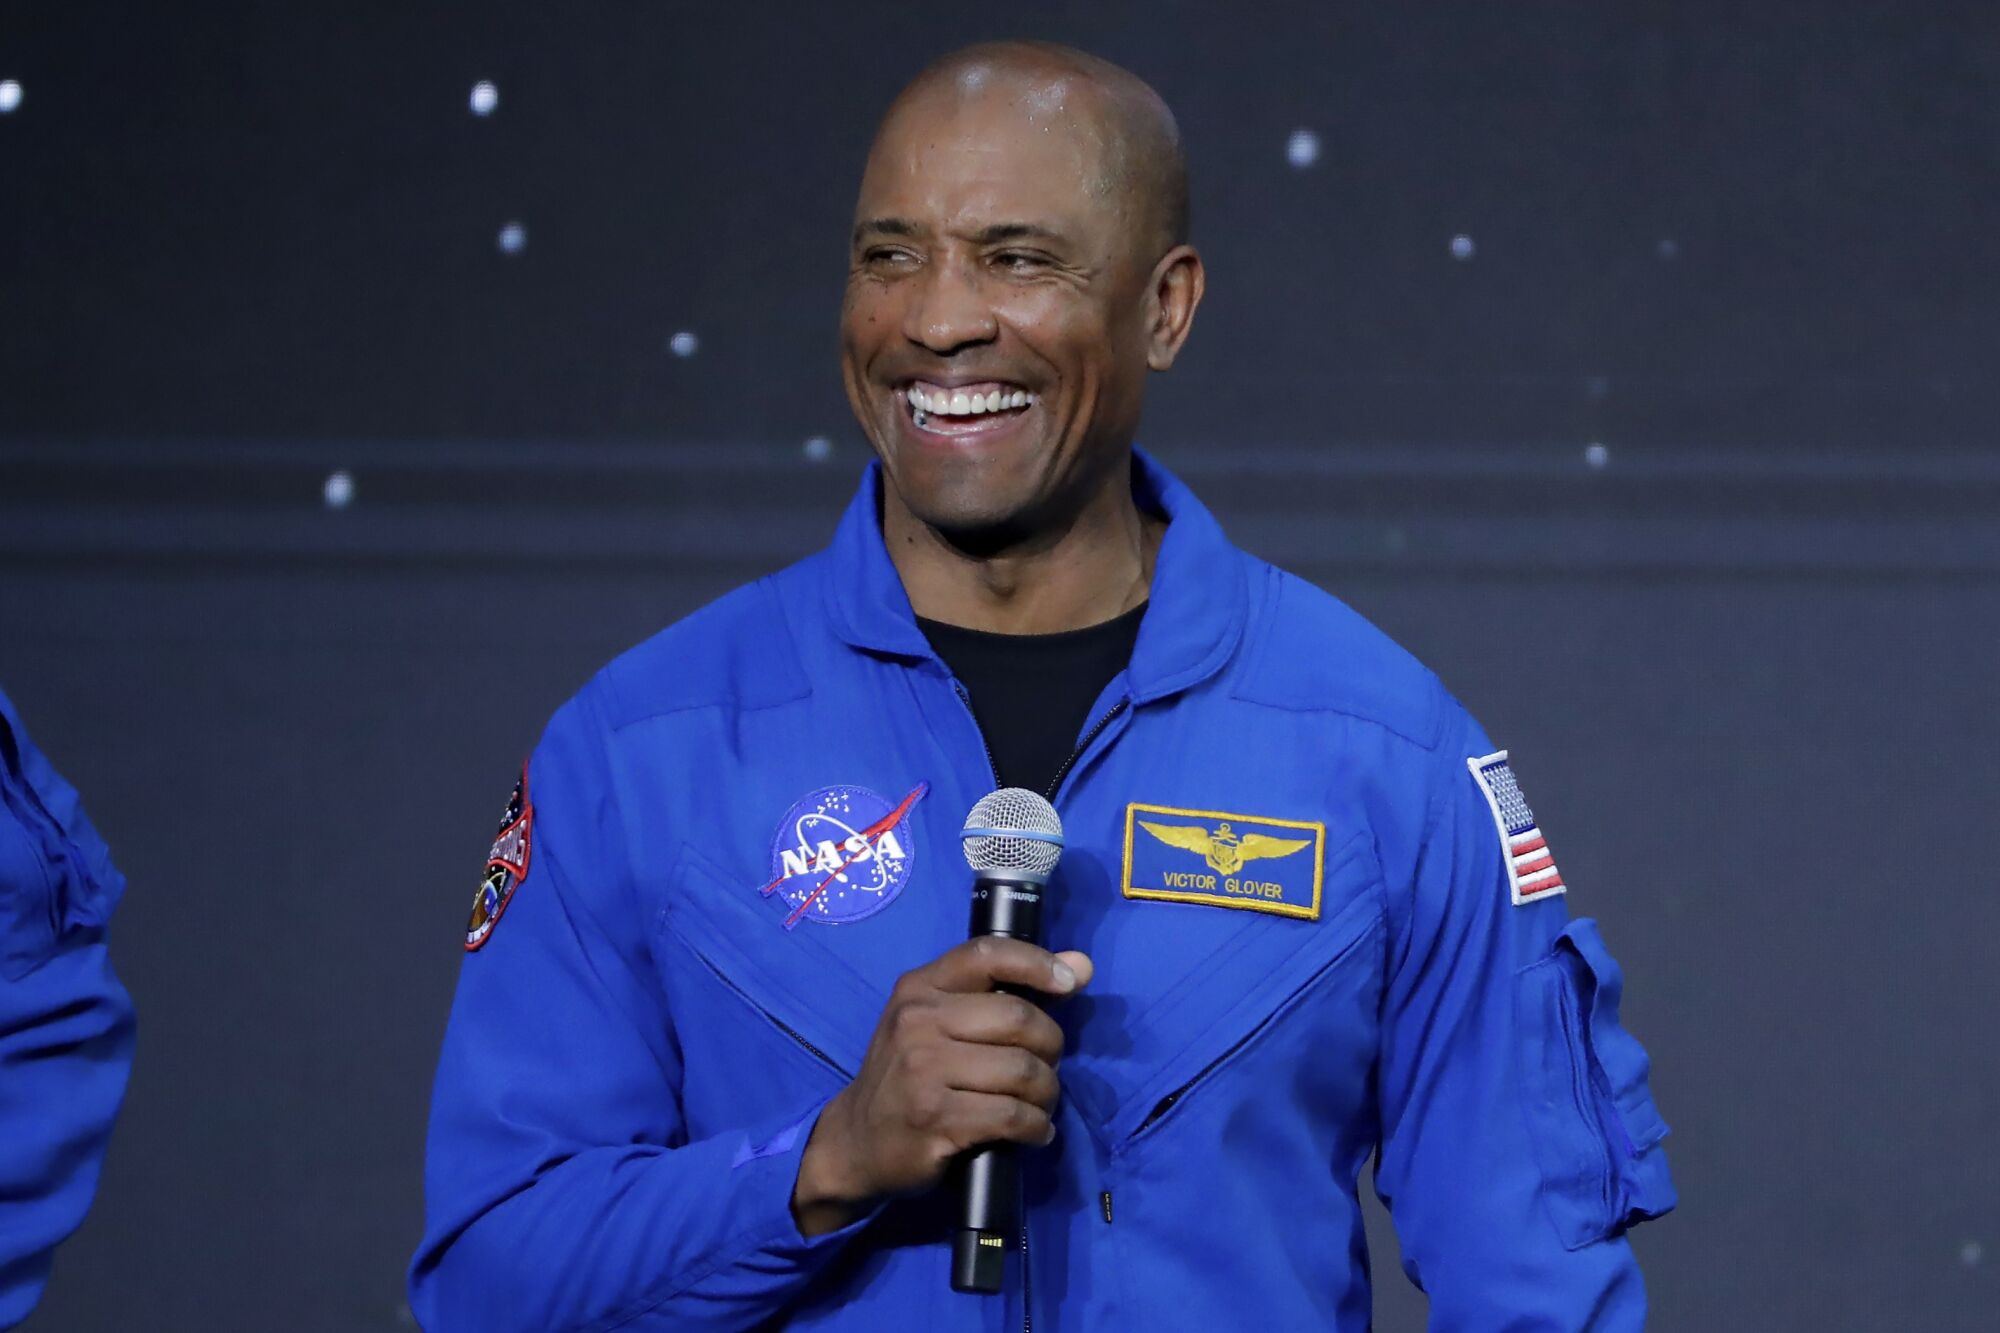 Victor Glover Jr., Artemis II ay programı için görev pilotu ilan edildikten sonra konuşuyor. 